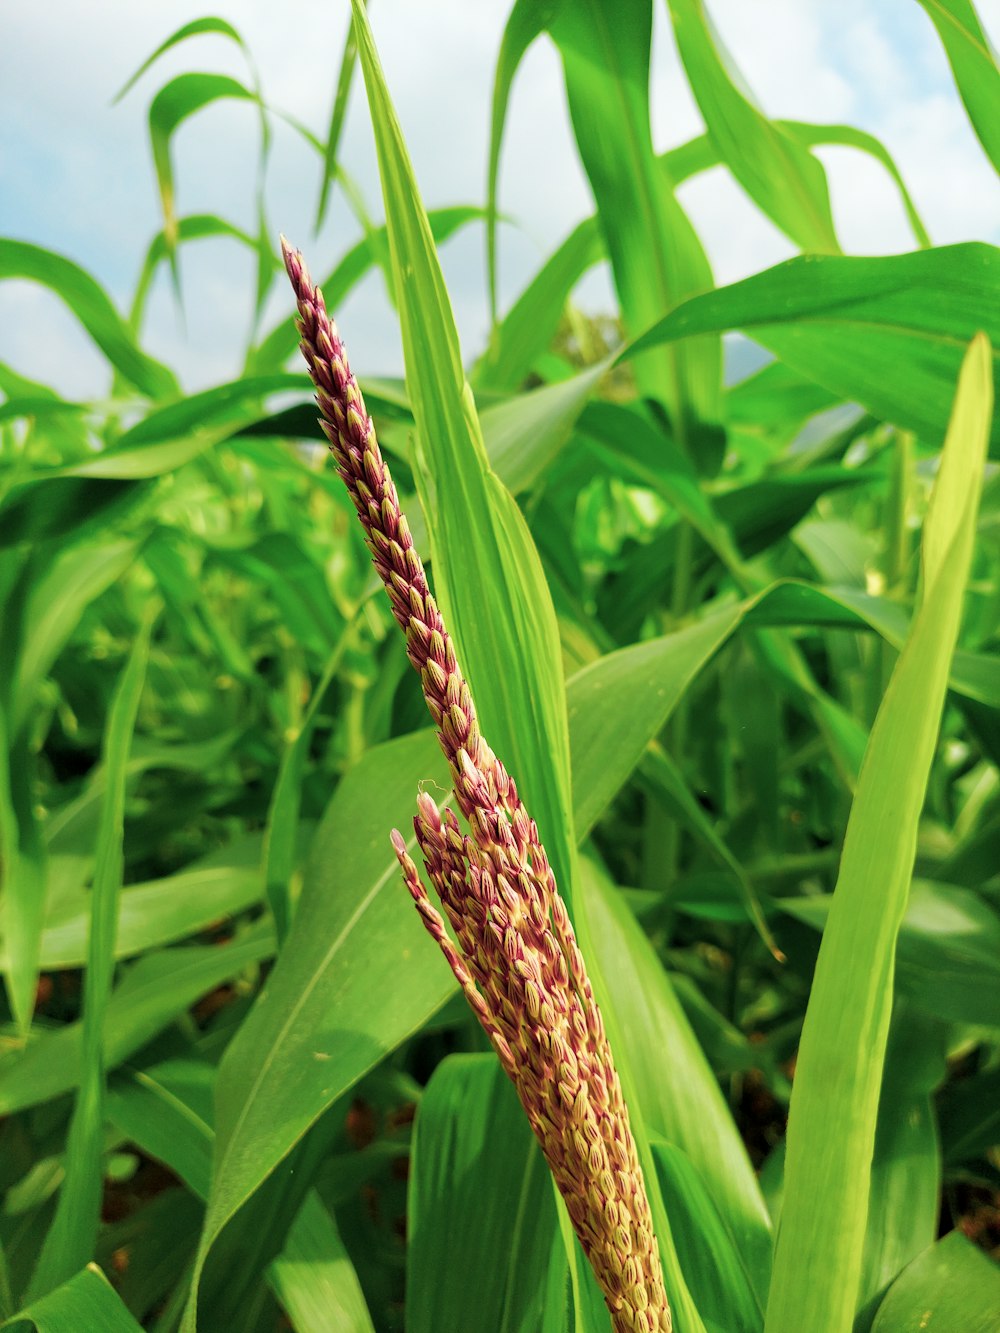 a close up of a stalk of corn in a field